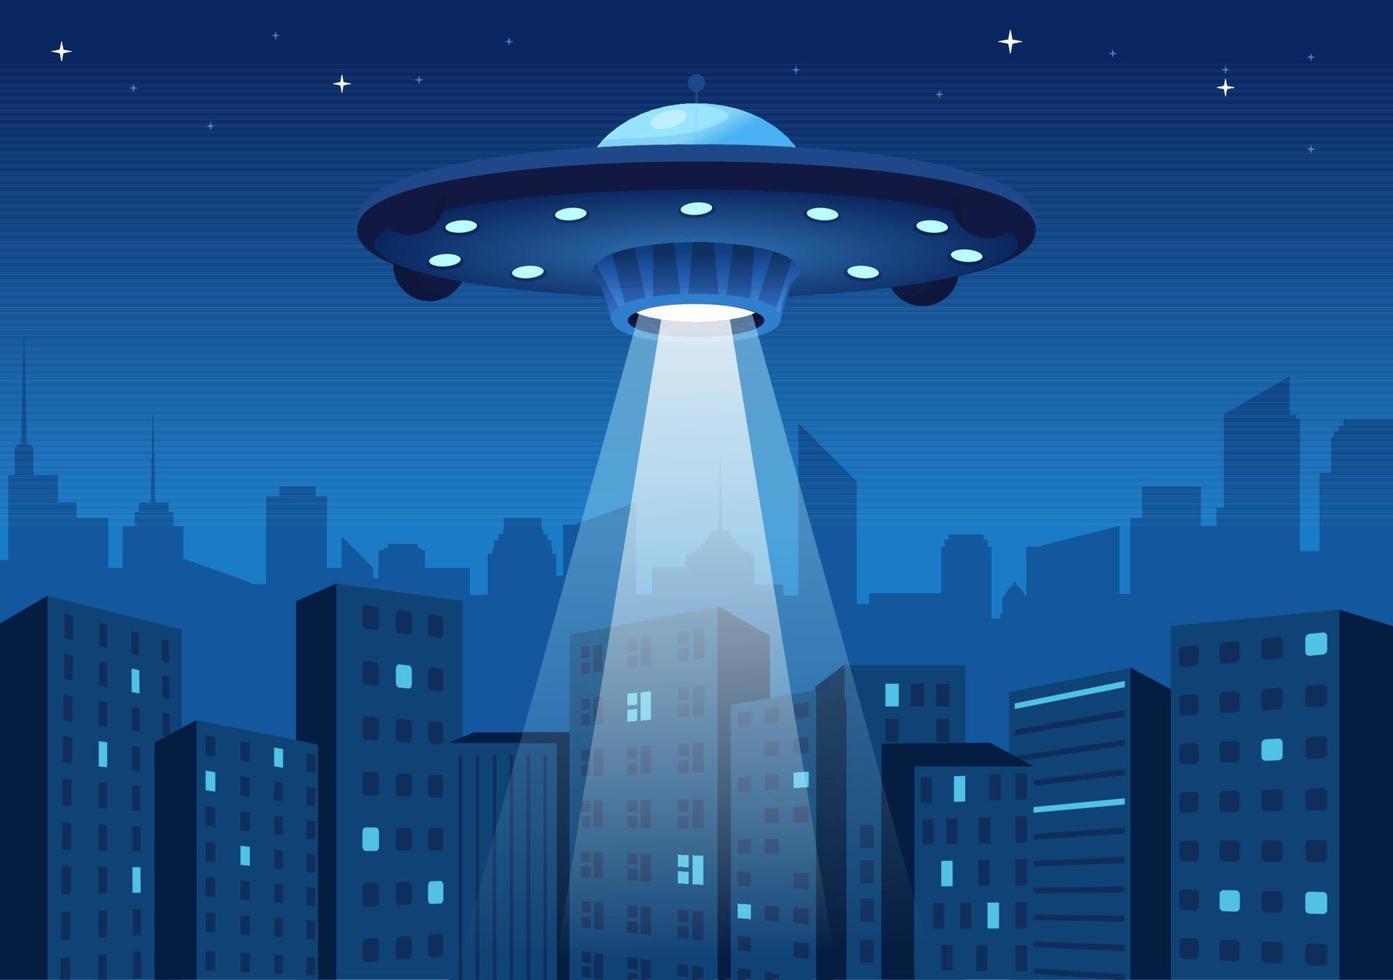 ufo-fliegendes raumschiff mit lichtstrahlen im himmel nachtstadtansicht und außerirdischer in flacher hand gezeichneter schablonenillustration der karikatur vektor